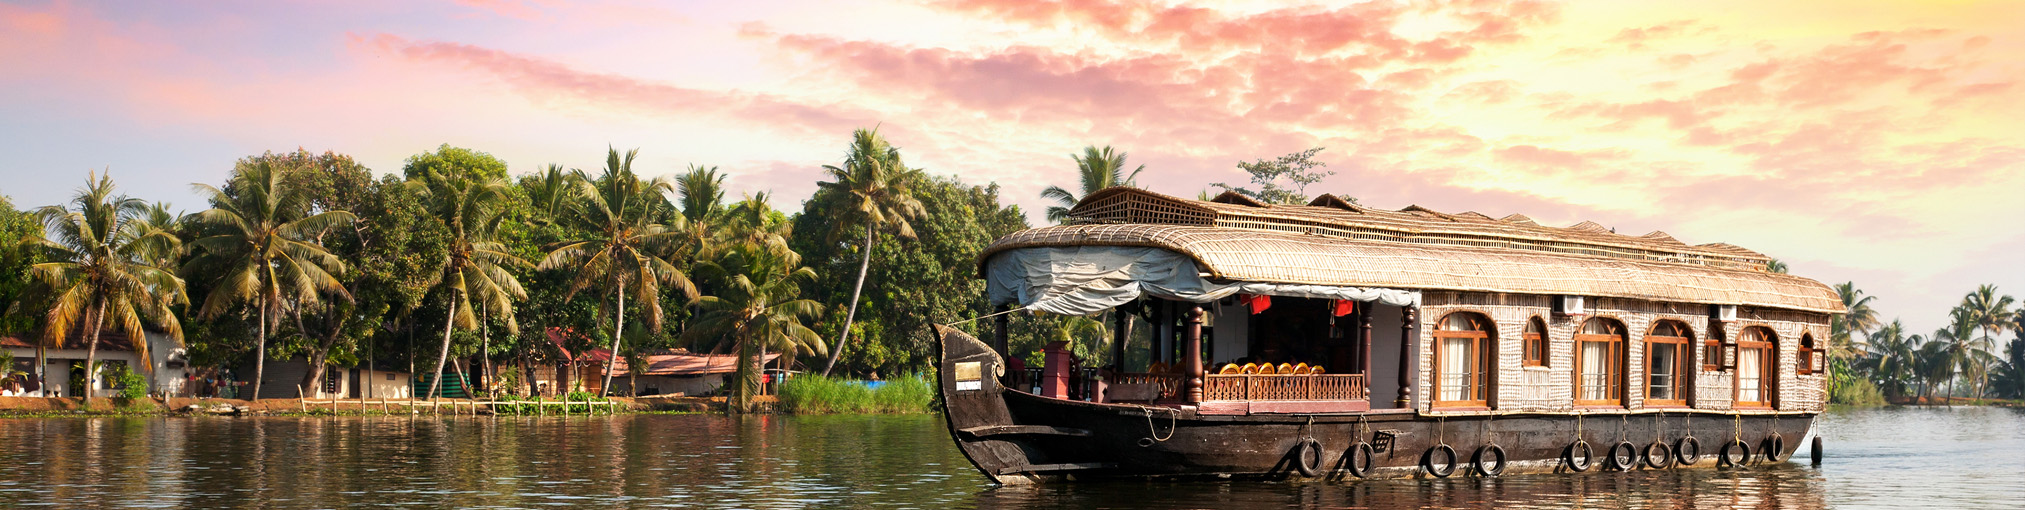 Boot auf einem Fluß, Palmen im Hintergrund